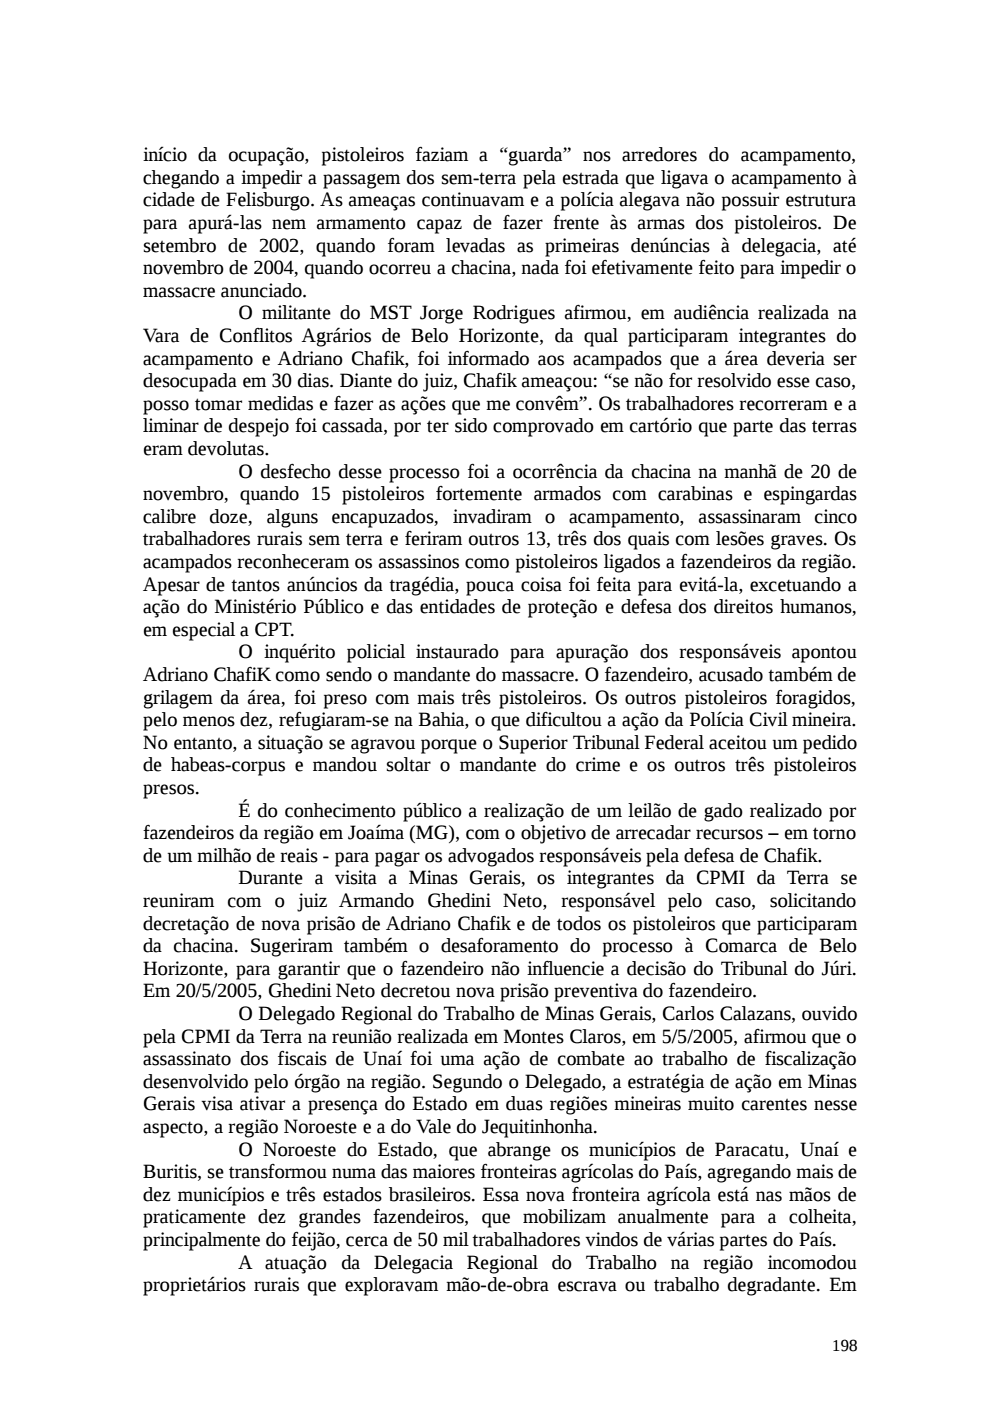 Page 198 from Relatório final da comissão